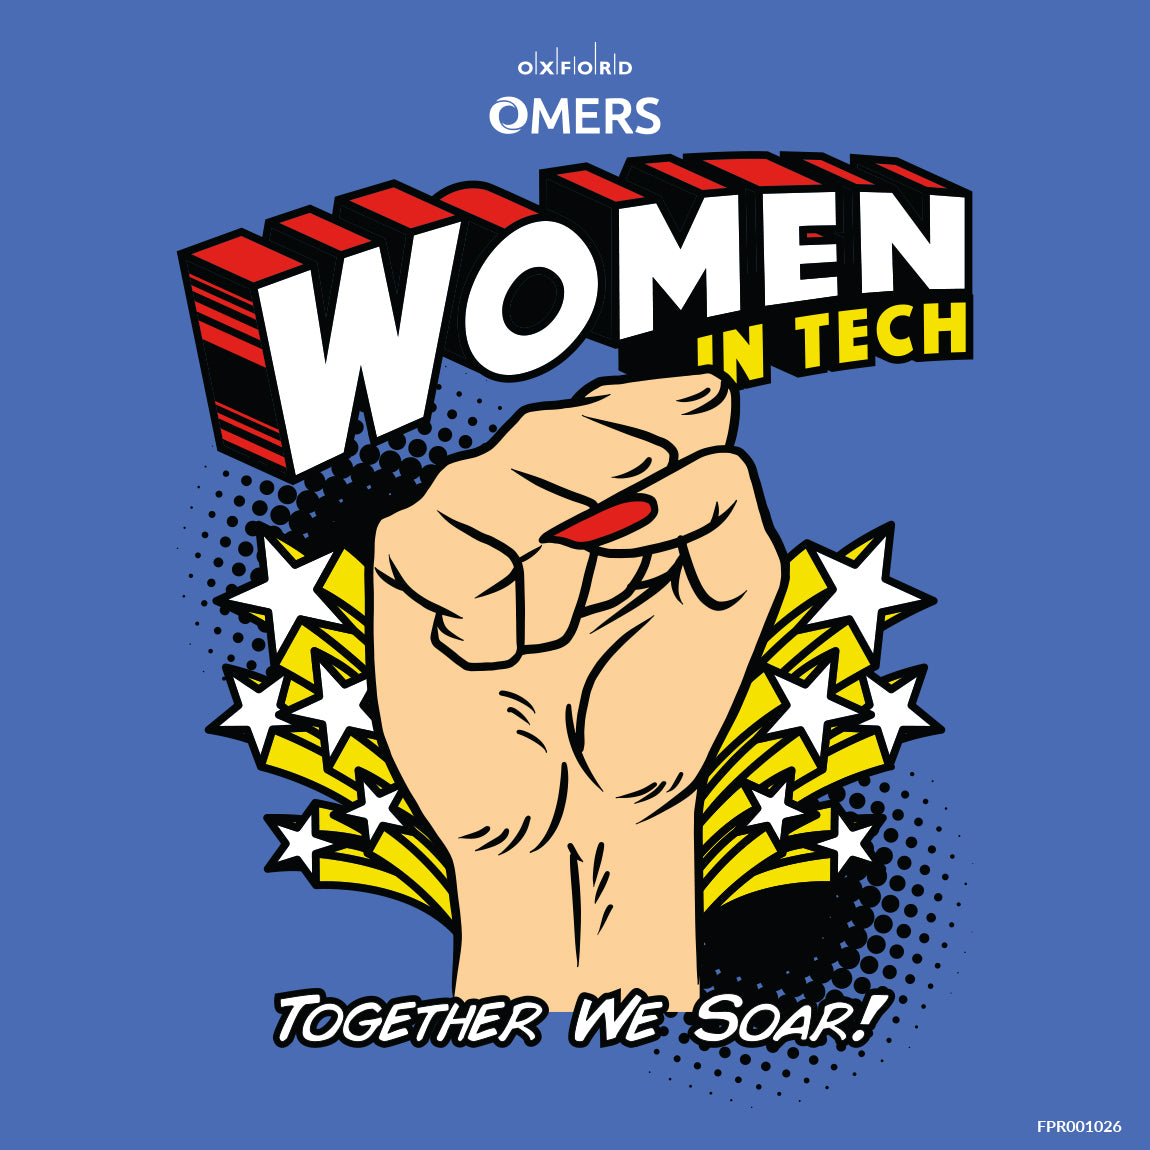 Women in Tech!